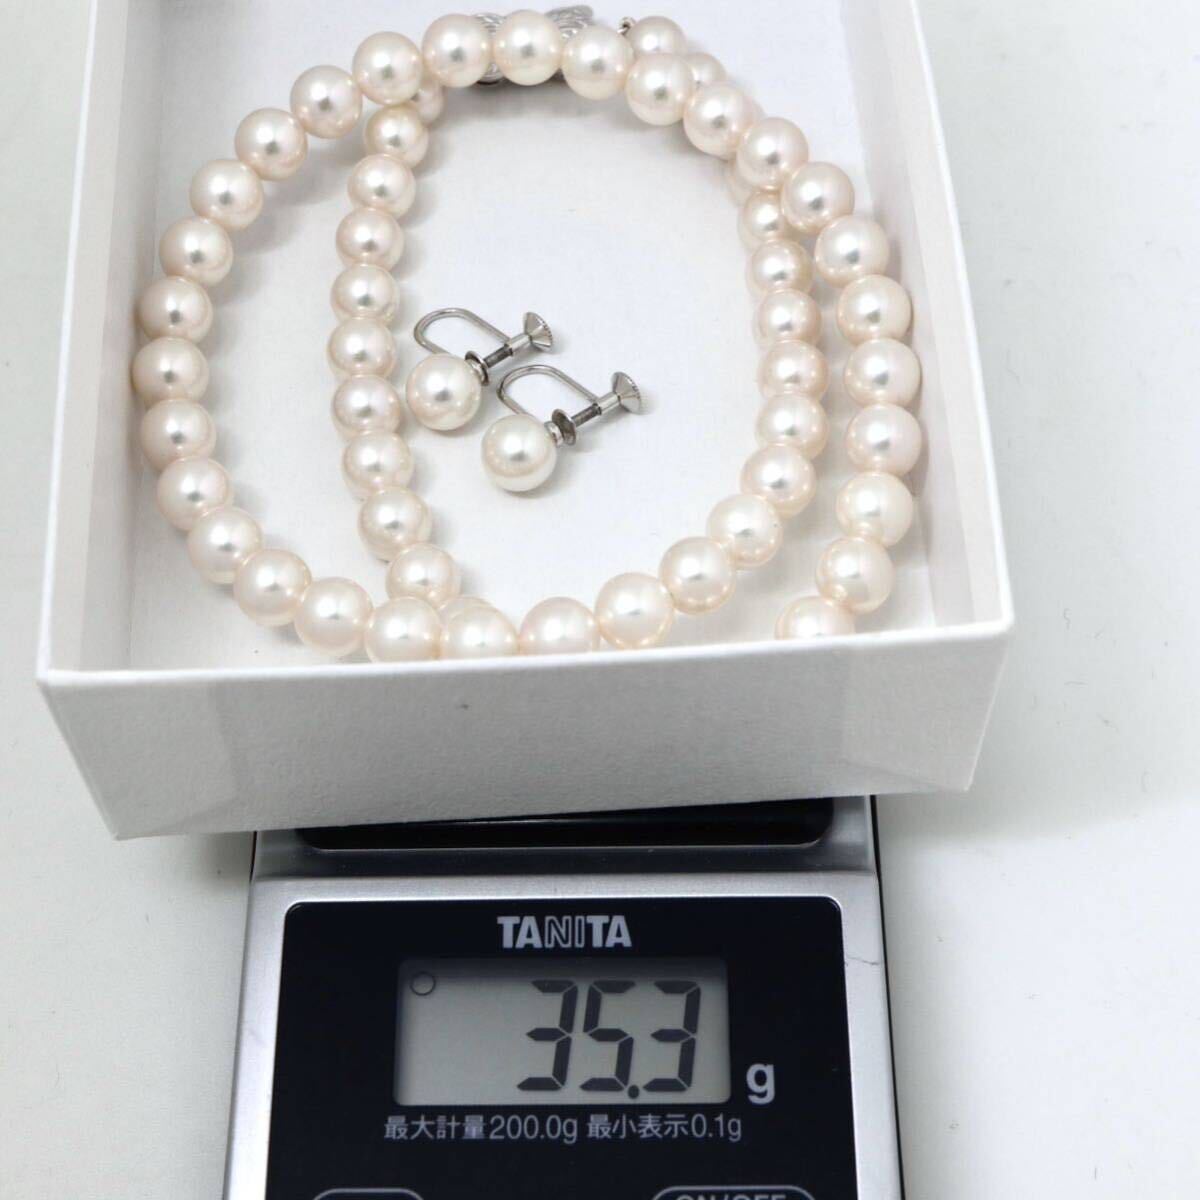 MIKIMOTO(ミキモト)高品質!!◆アコヤ本真珠ネックレス/イヤリング◆A 約35.3g 約42.5cm 7.0-7.5mm珠 pearl パール necklace FB2/FB2の画像10